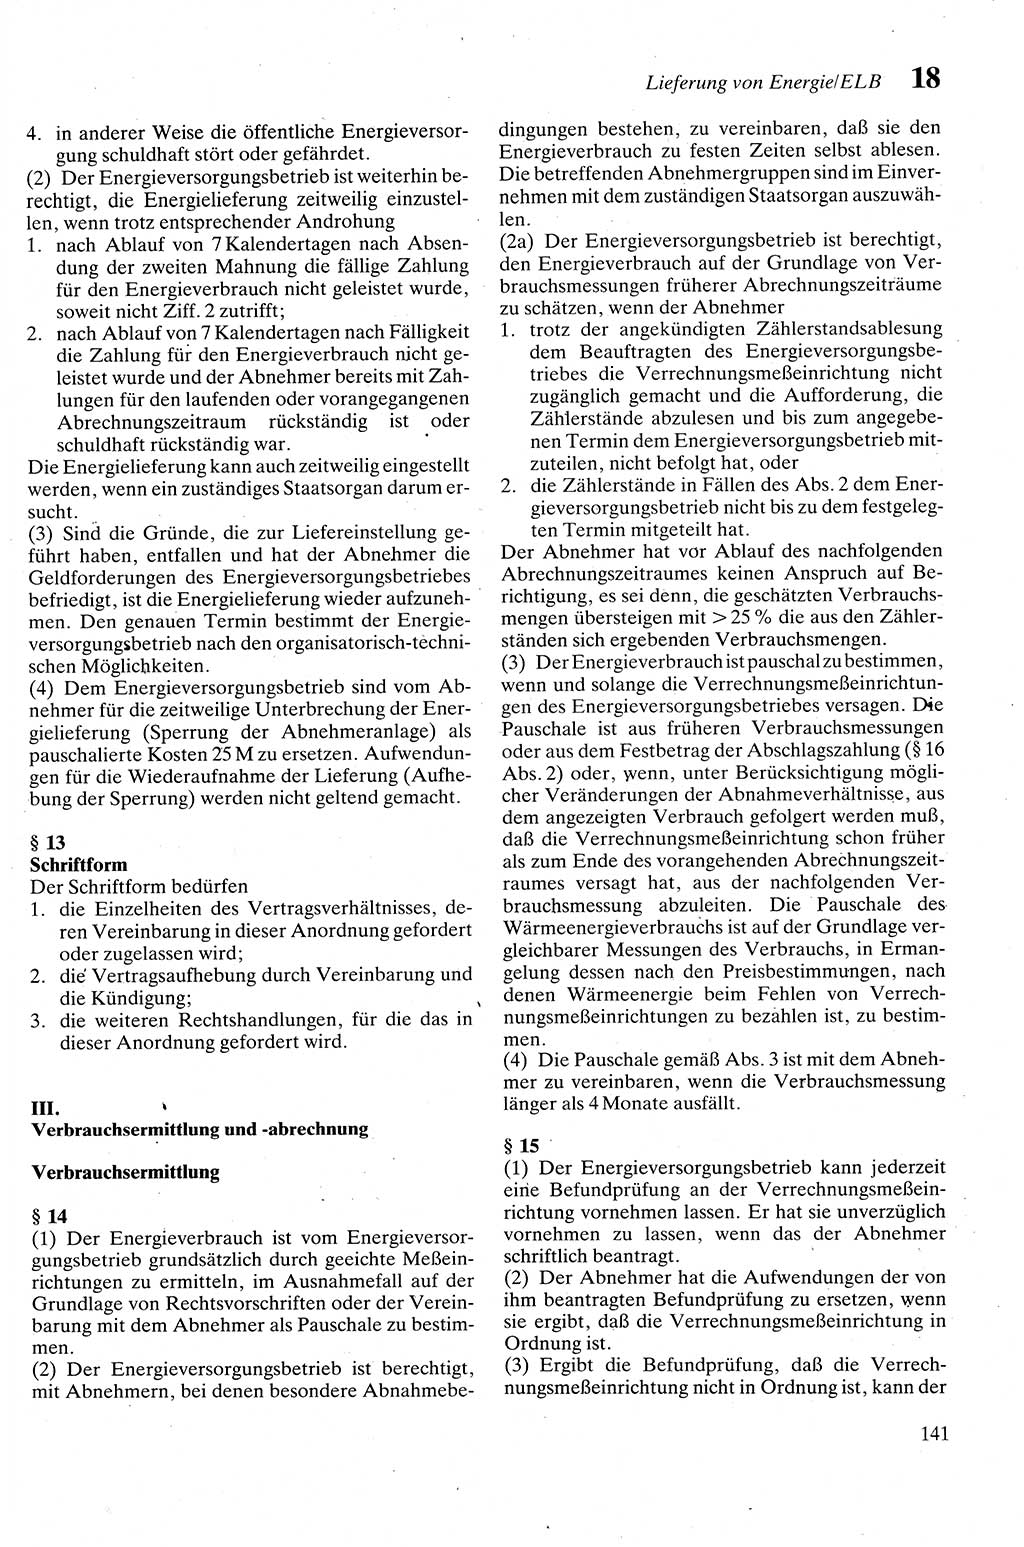 Zivilgesetzbuch (ZVG) sowie angrenzende Gesetze und Bestimmungen [Deutsche Demokratische Republik (DDR)] 1975, Seite 141 (ZGB Ges. Best. DDR 1975, S. 141)